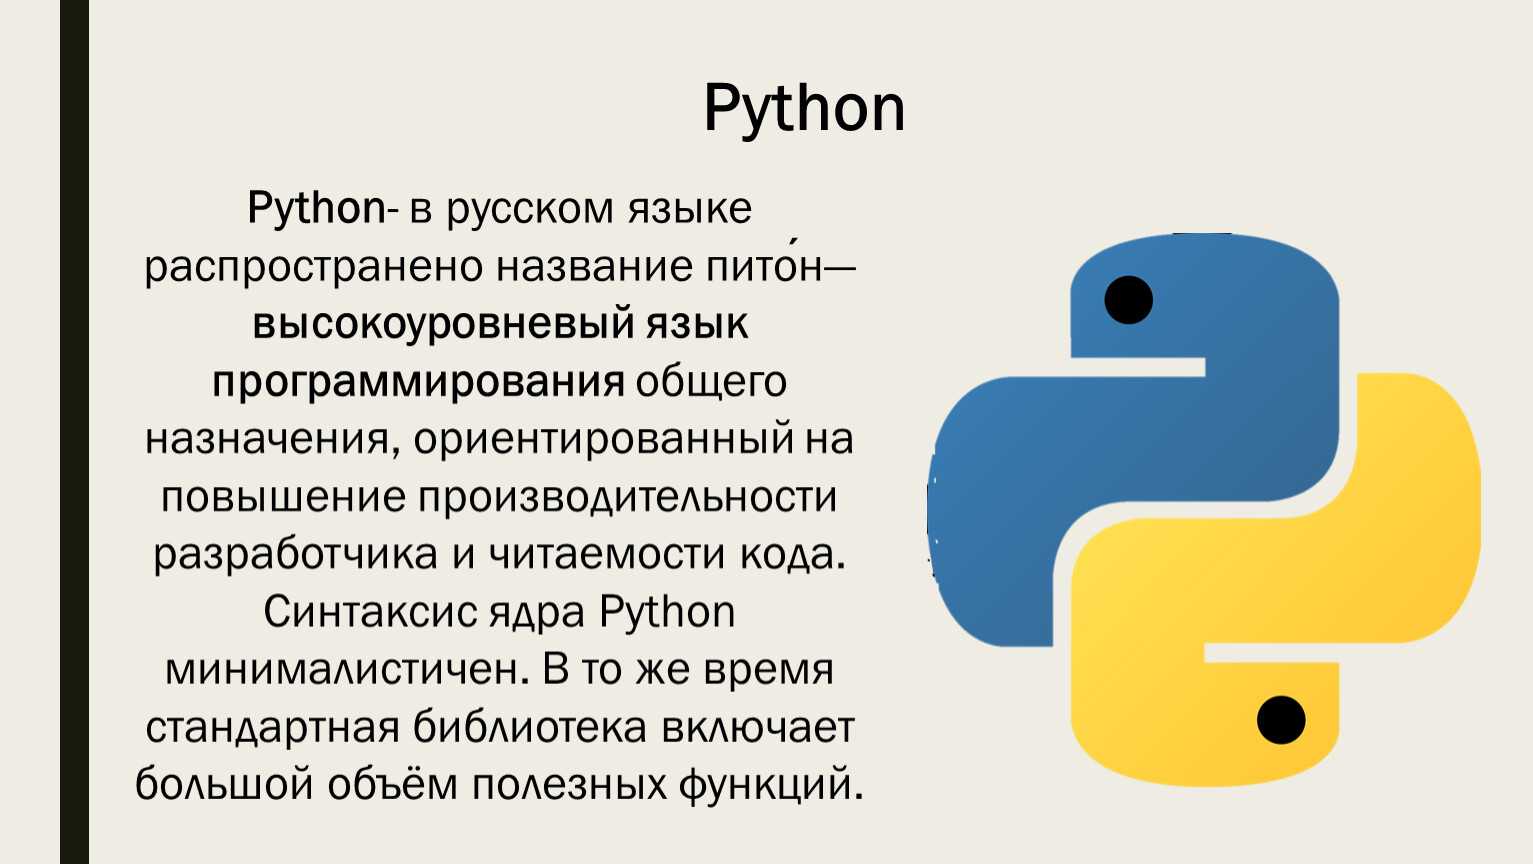 Файлы .pyc, .pyd и .pyo в python: что означают и содержат, различия и примеры